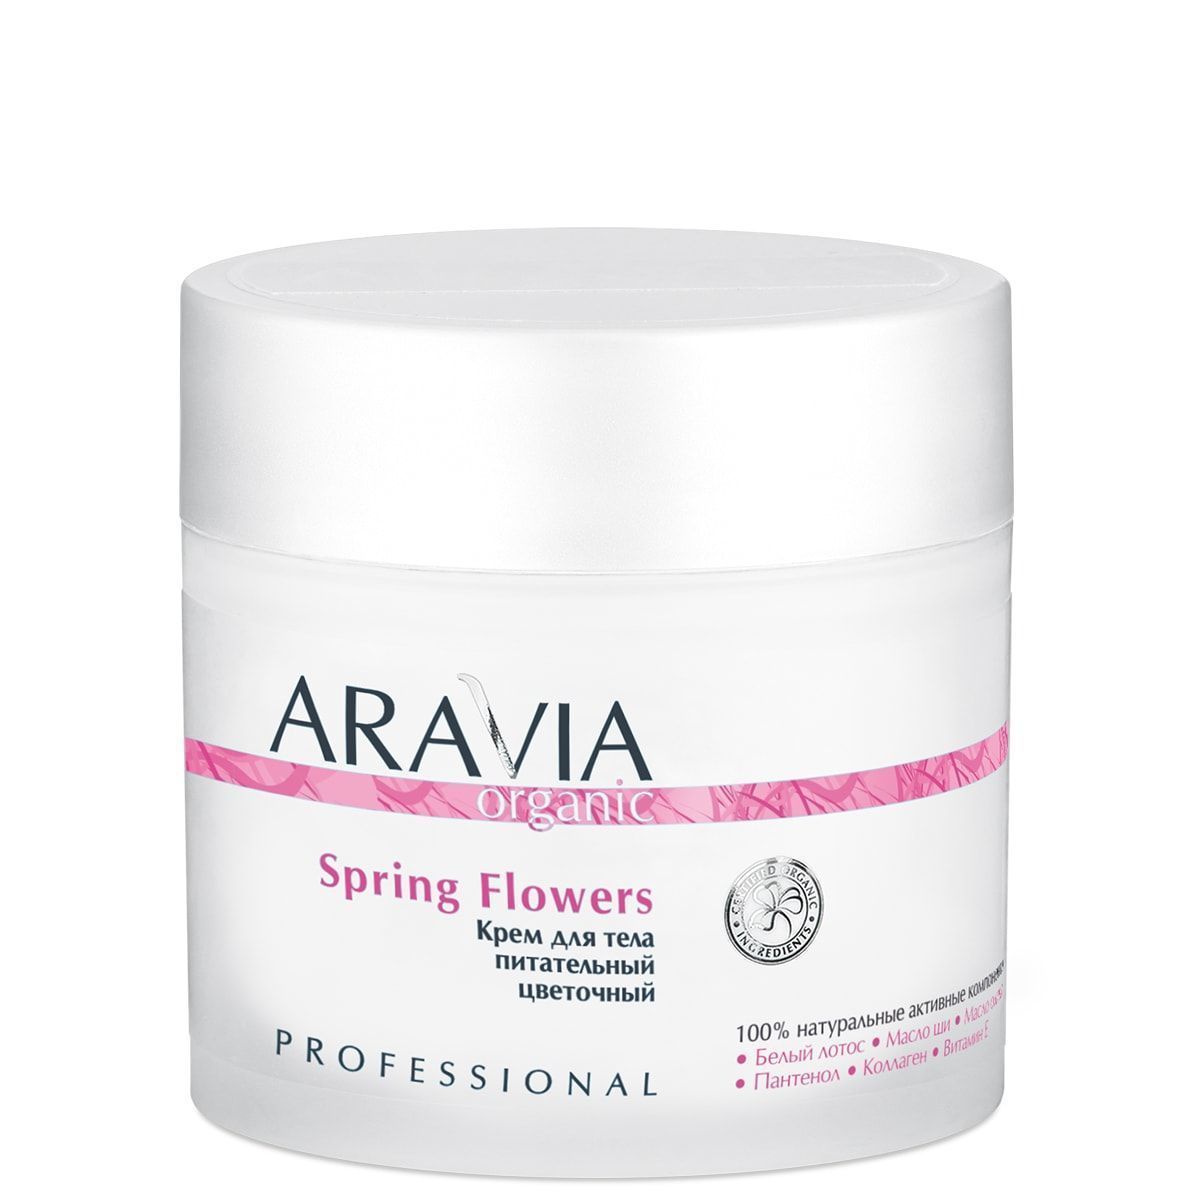 Крем для тела питательный цветочный Spring Flowers, 300 мл, ARAVIA Organic. 7031